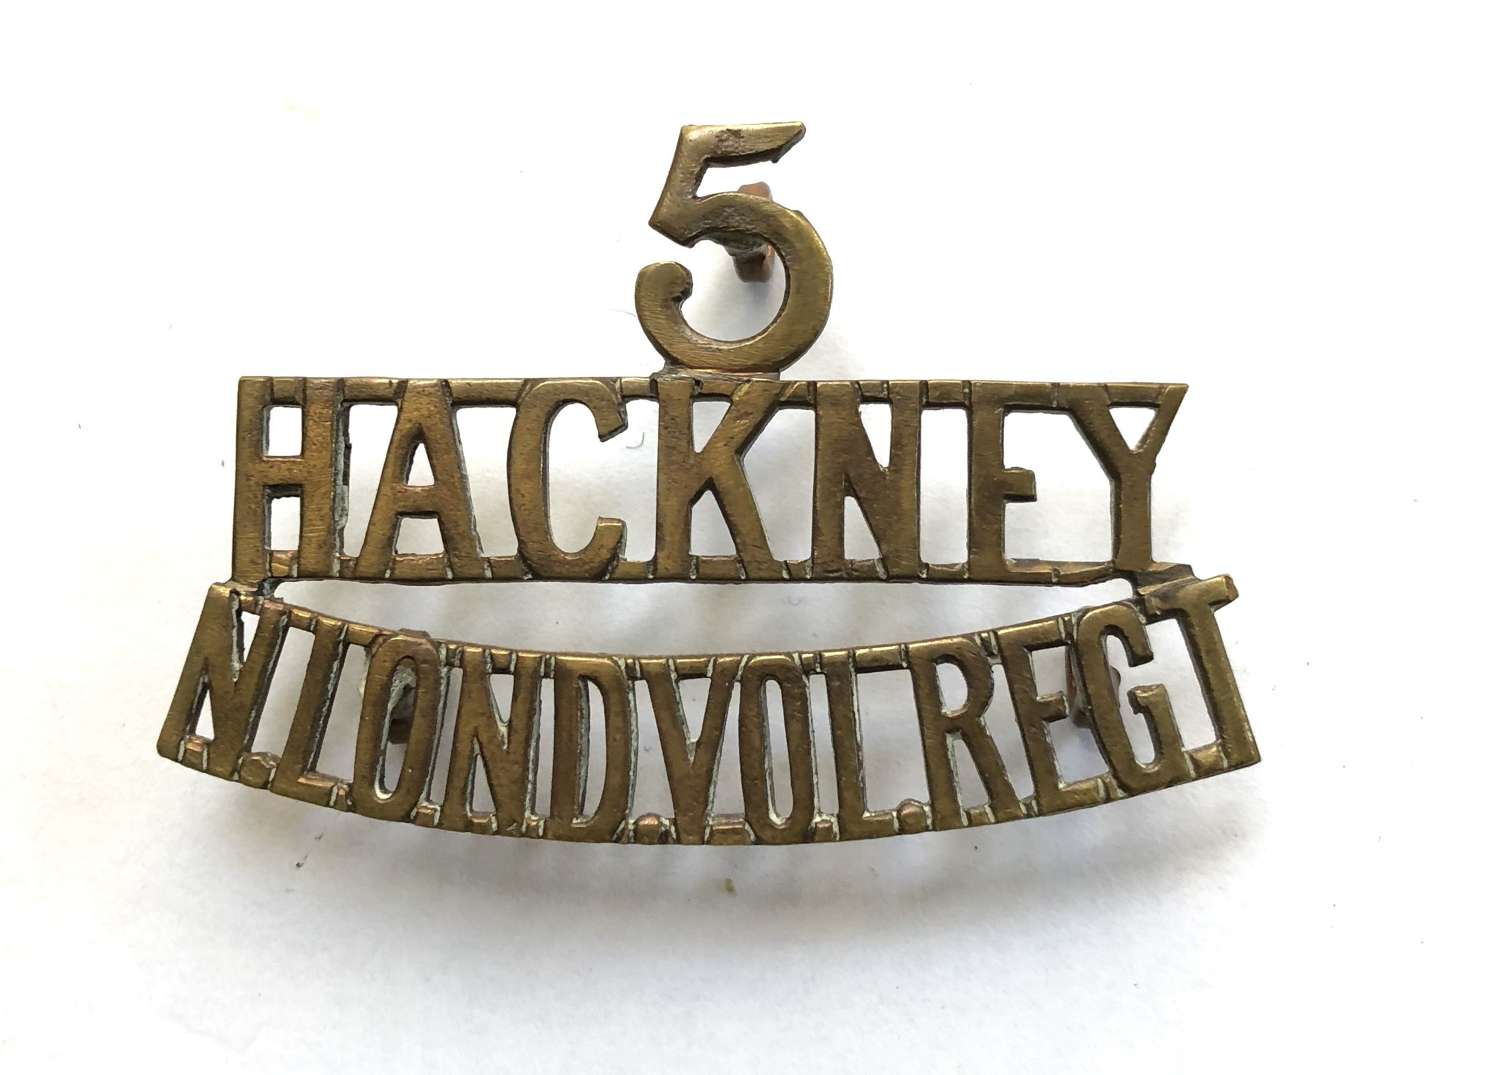 5 / HACKNEY / N. LOND. VOL. REGT. WWI brass VTC shoulder title